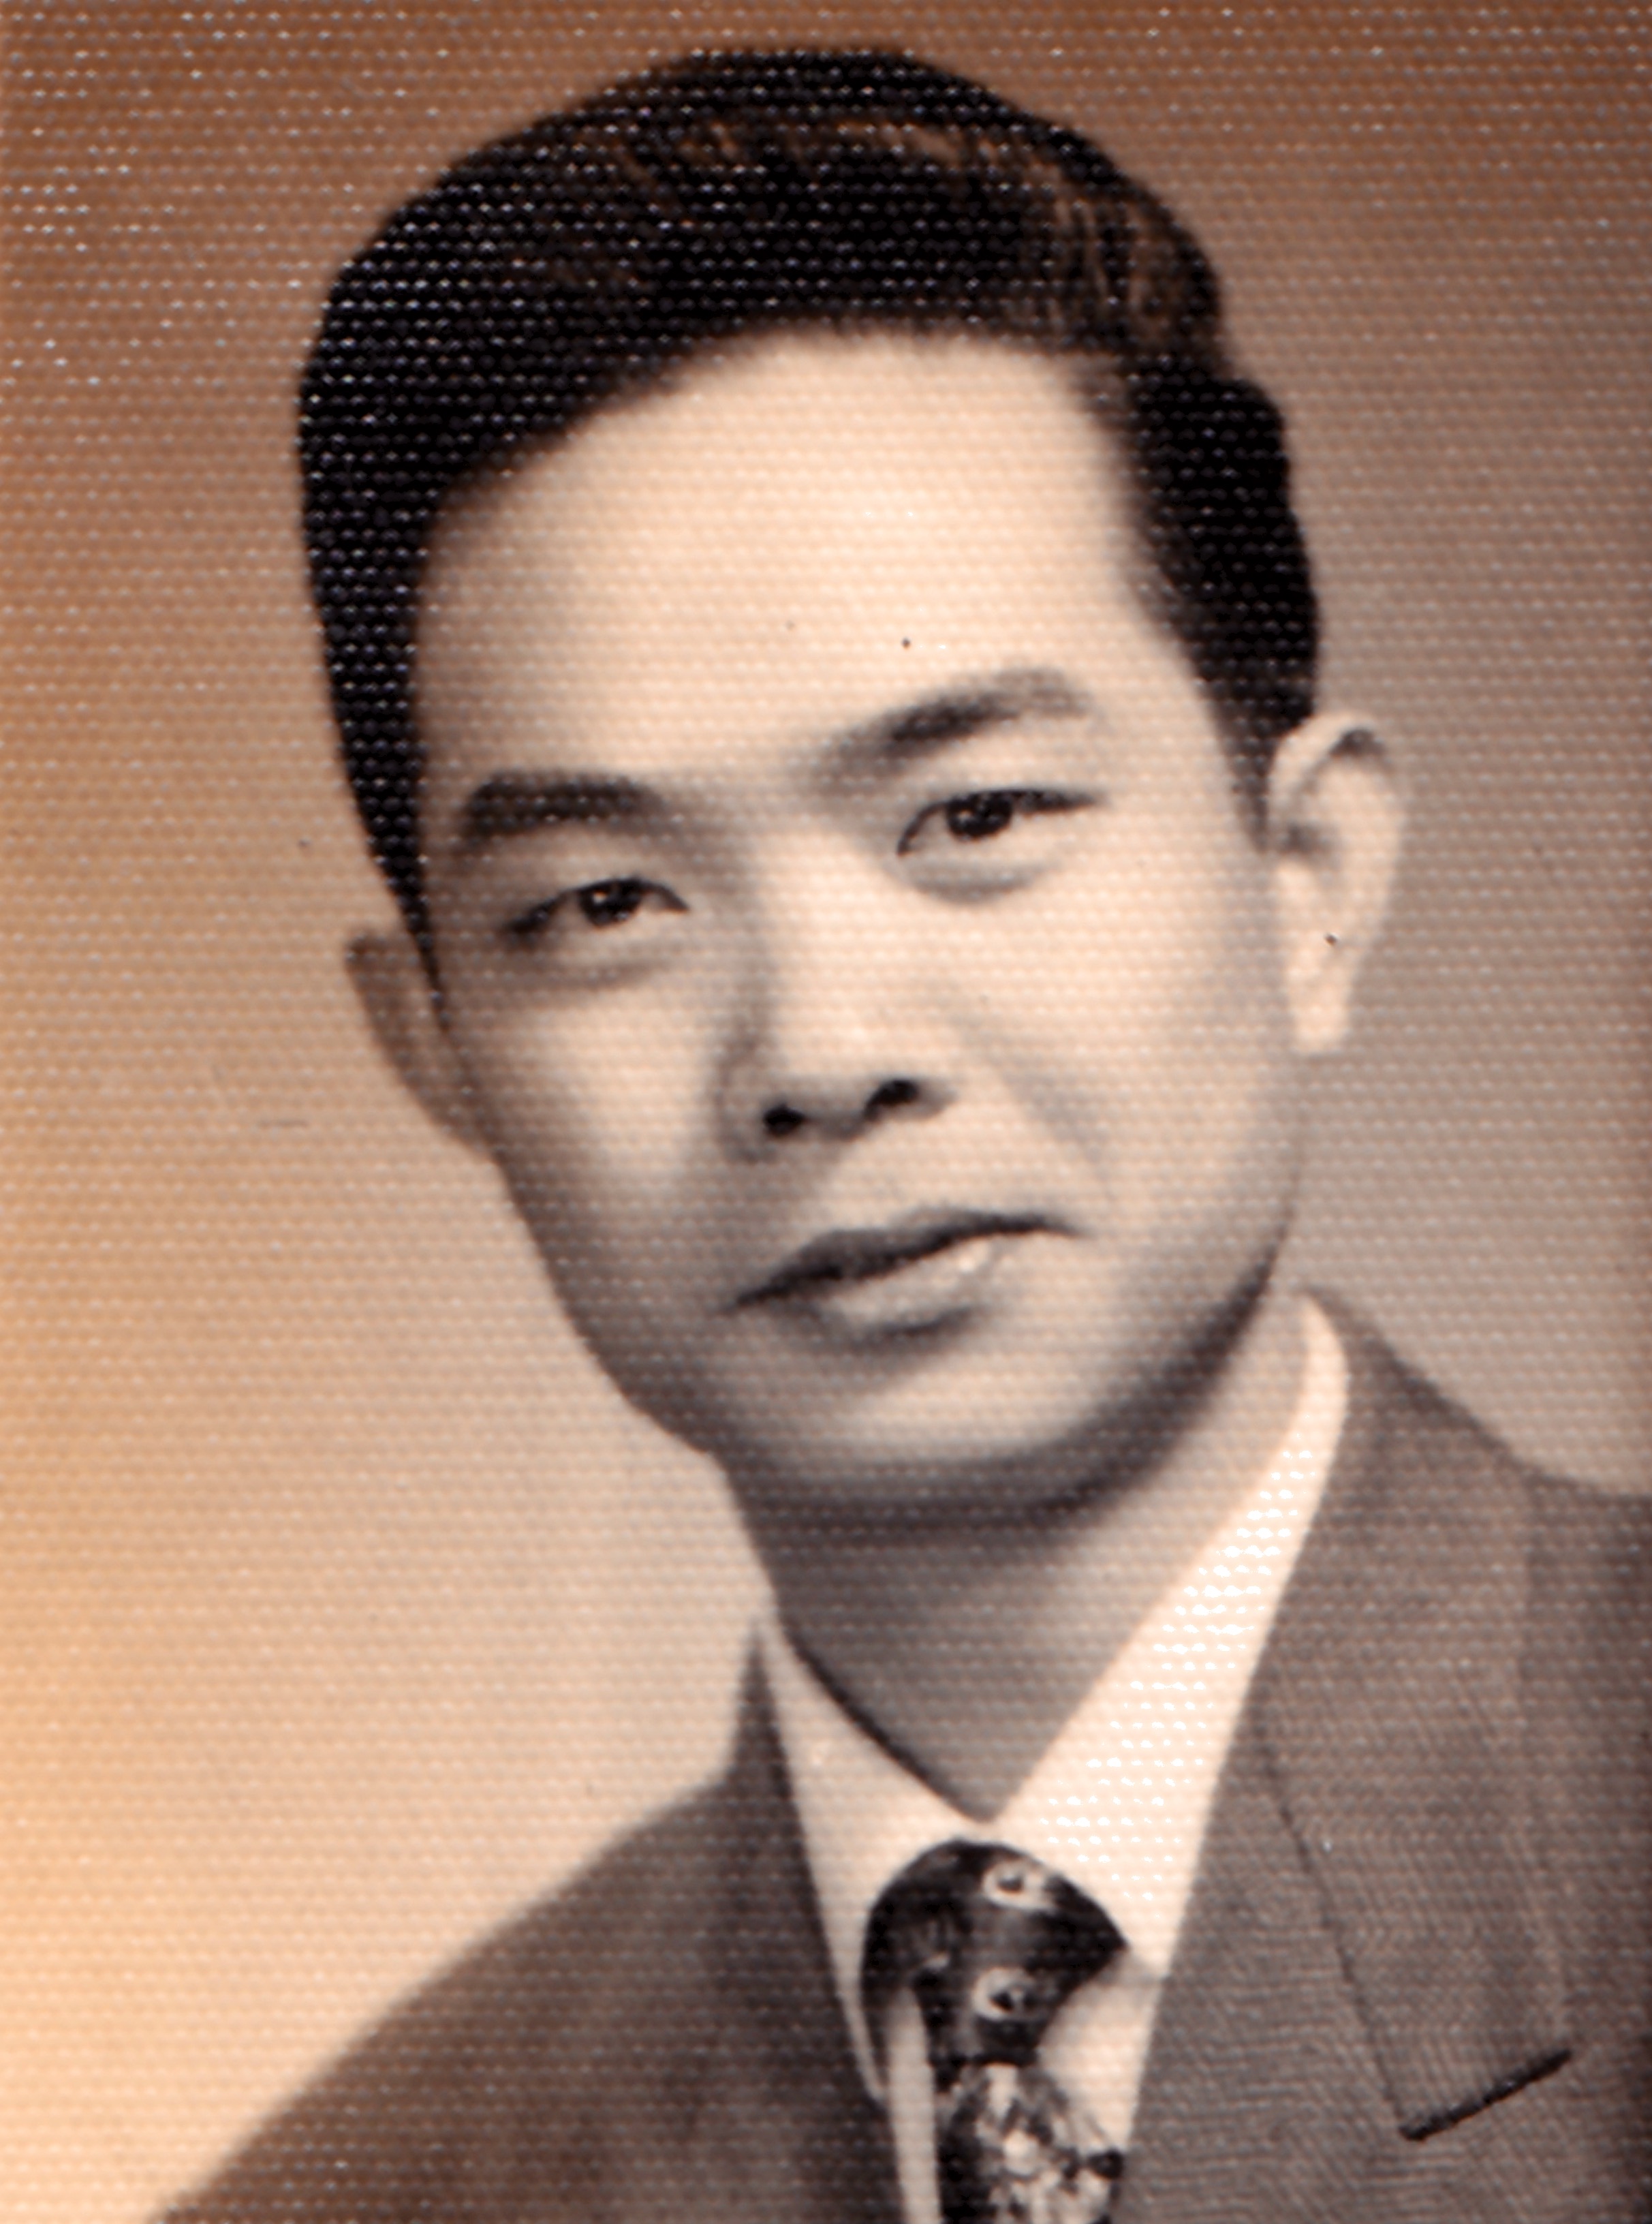 1961年10月份 当时26岁小伙子。受聘於上海市长江光学仪器厂任光学仪器设计工程师，设计显微微镜1000倍。